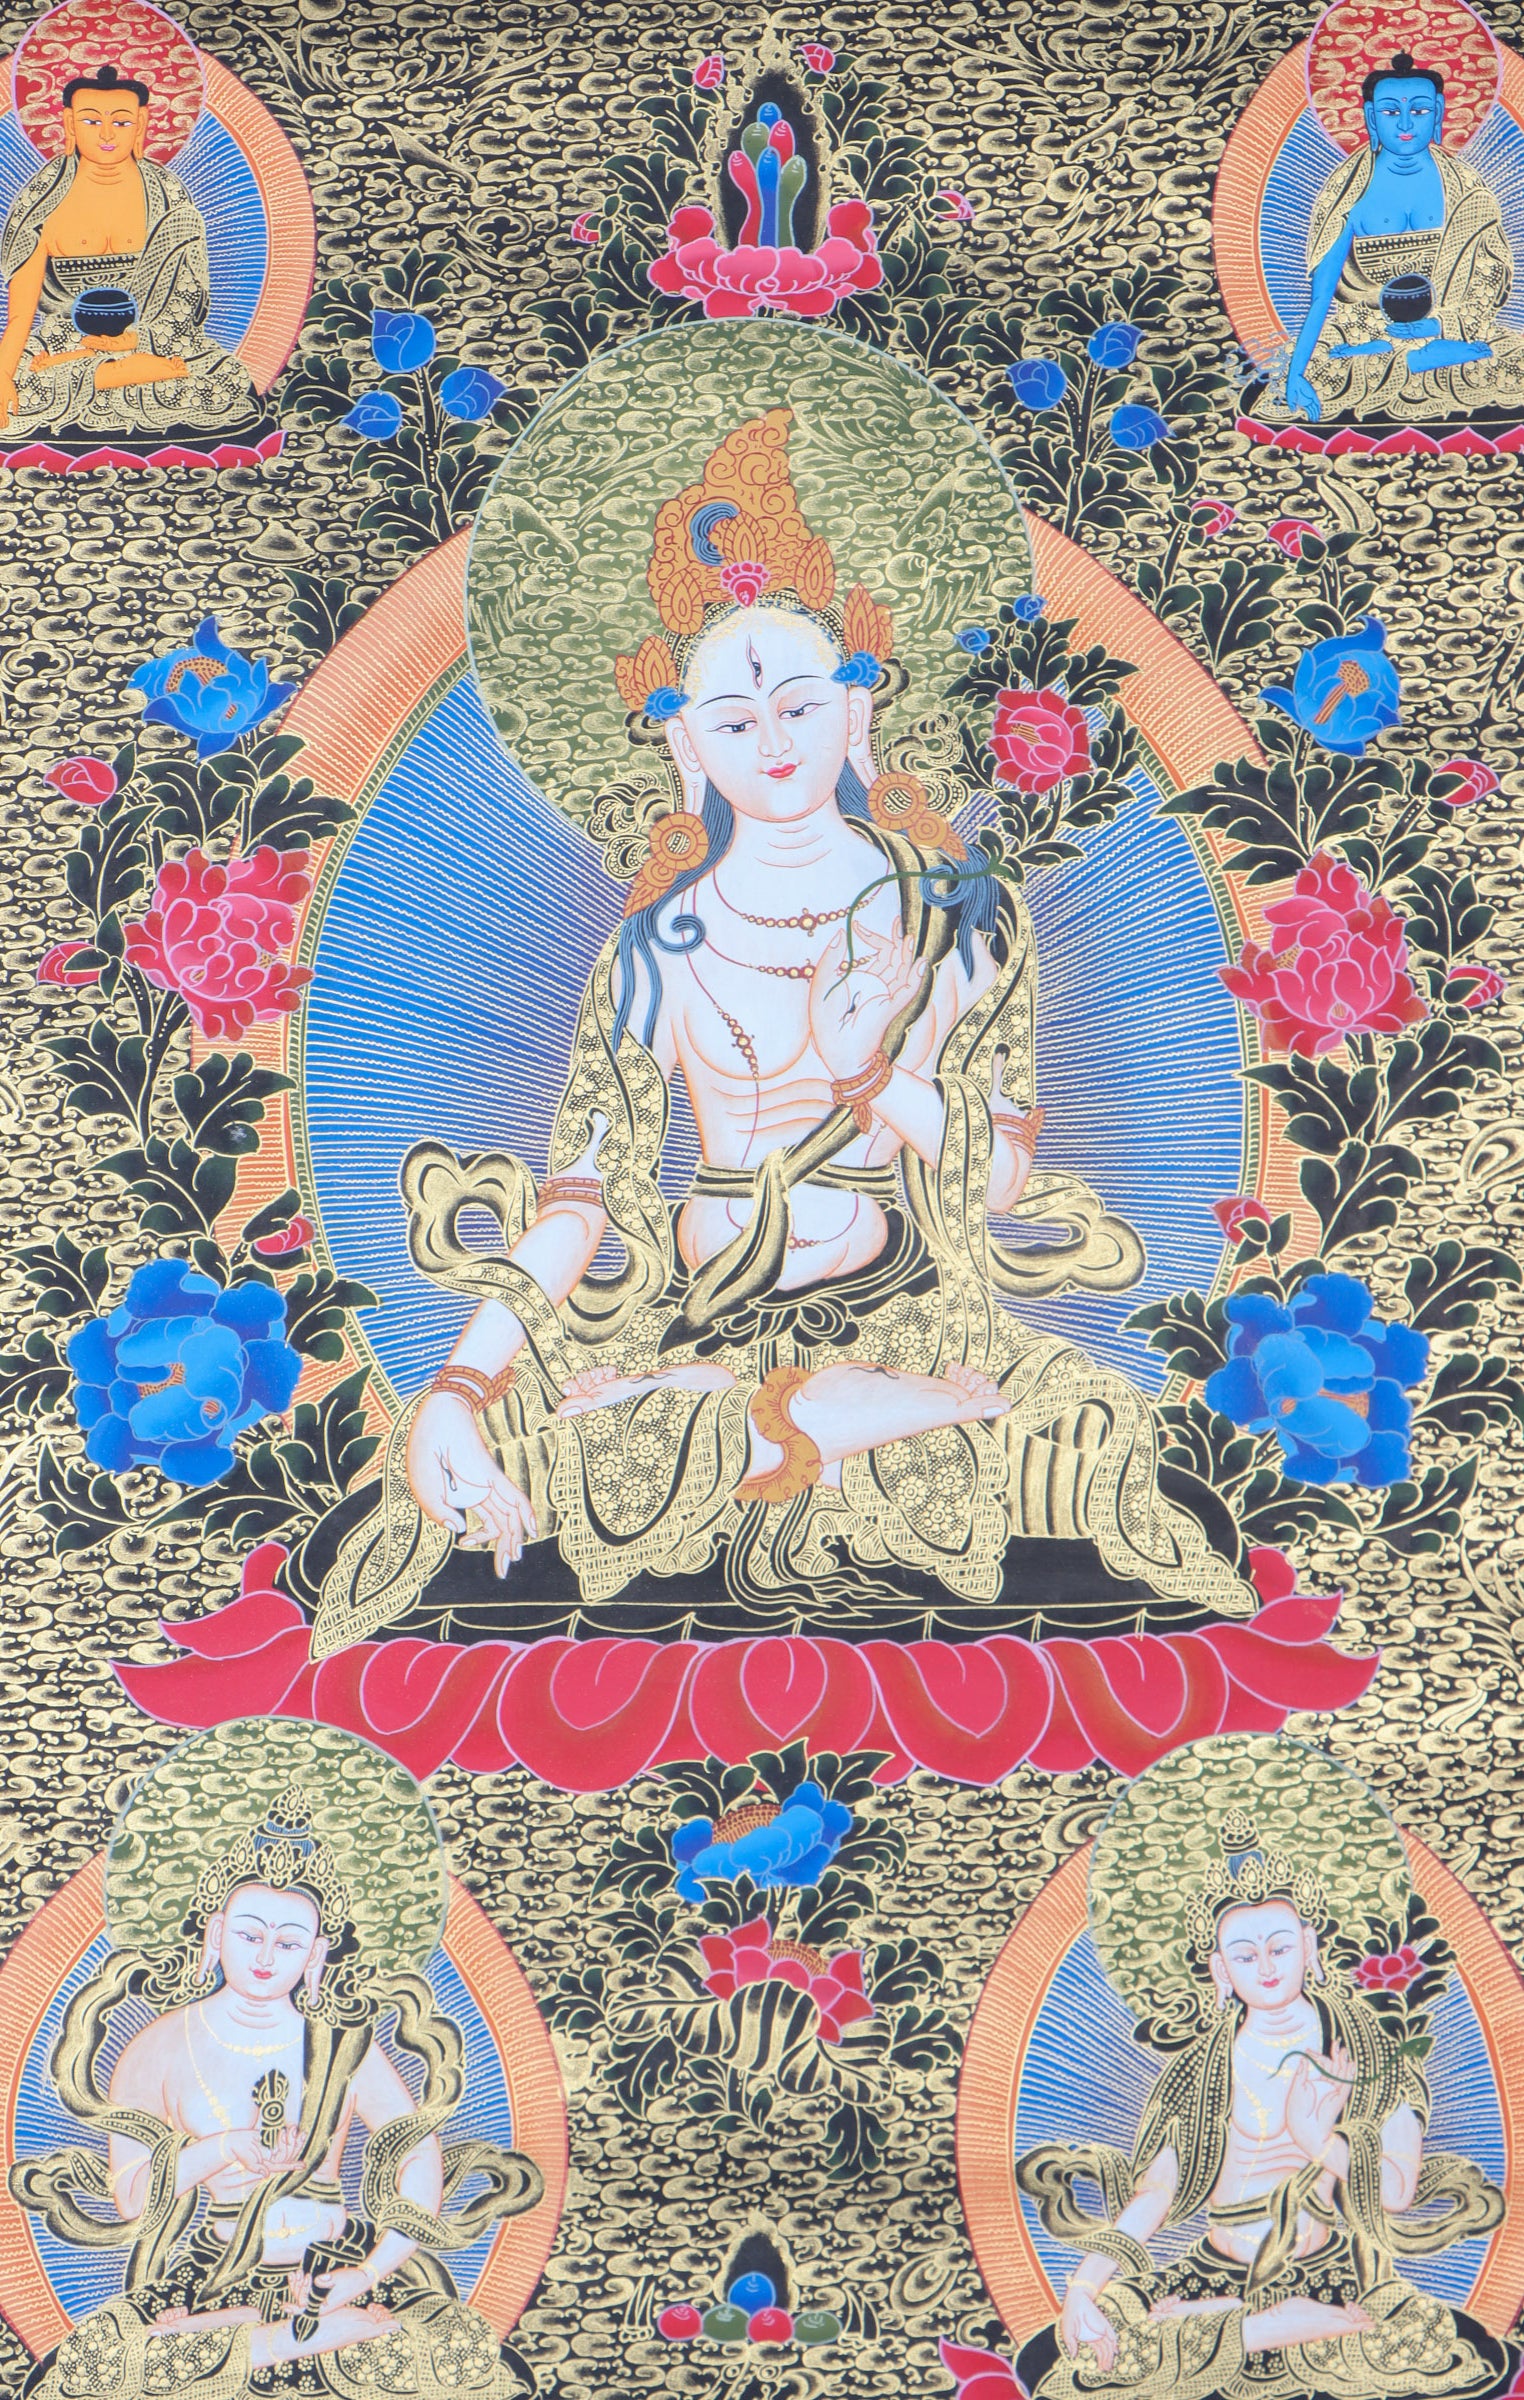  White Tara Thangka for spiritual peace.